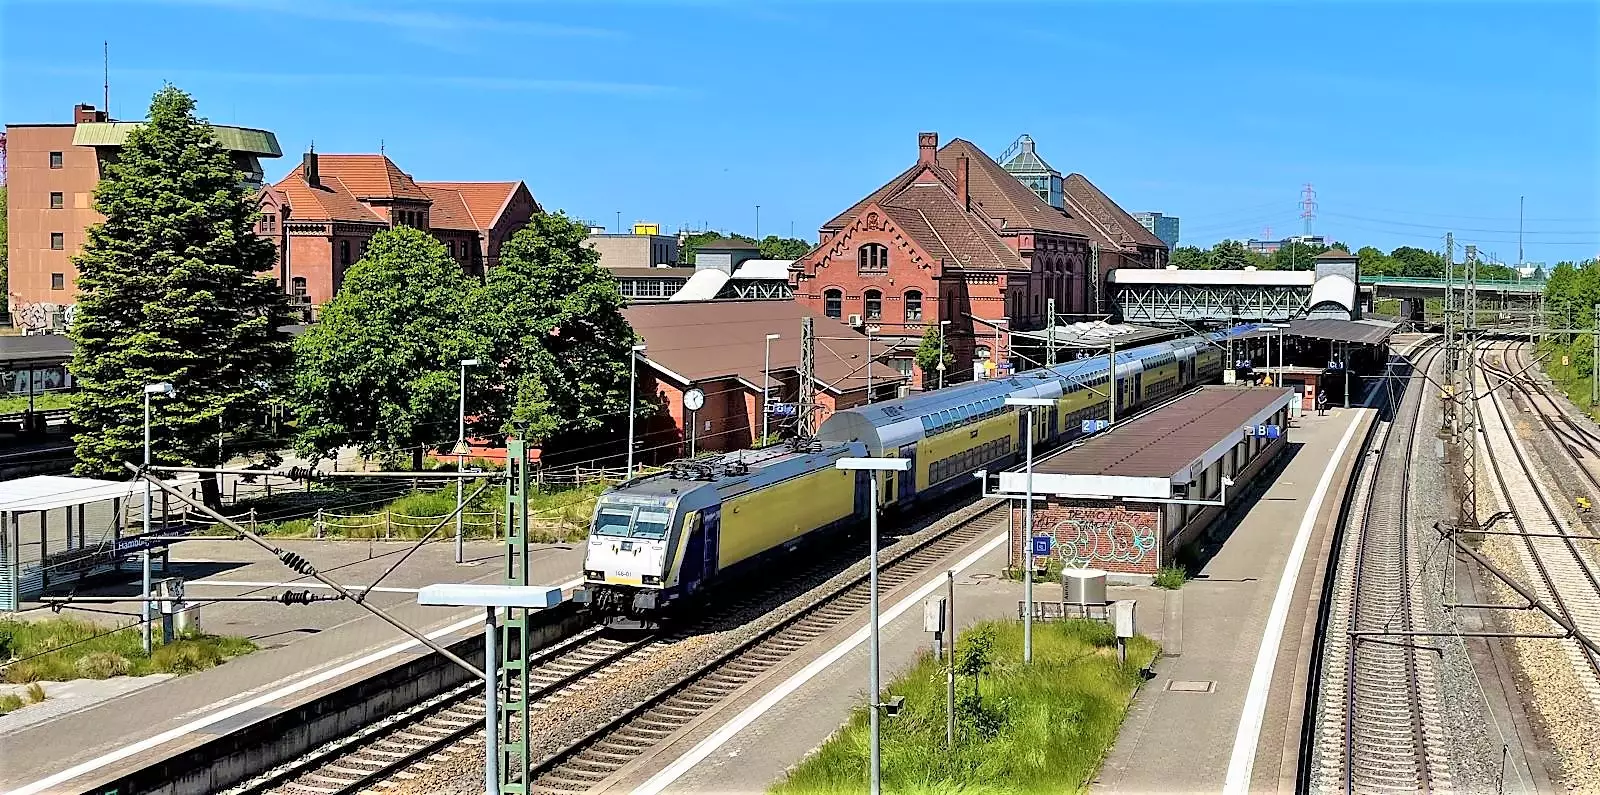 Bahnhof-Harburg-Zu-ersch-pft-f-r-Treppe-Mann-l-uft-ber-Gleise